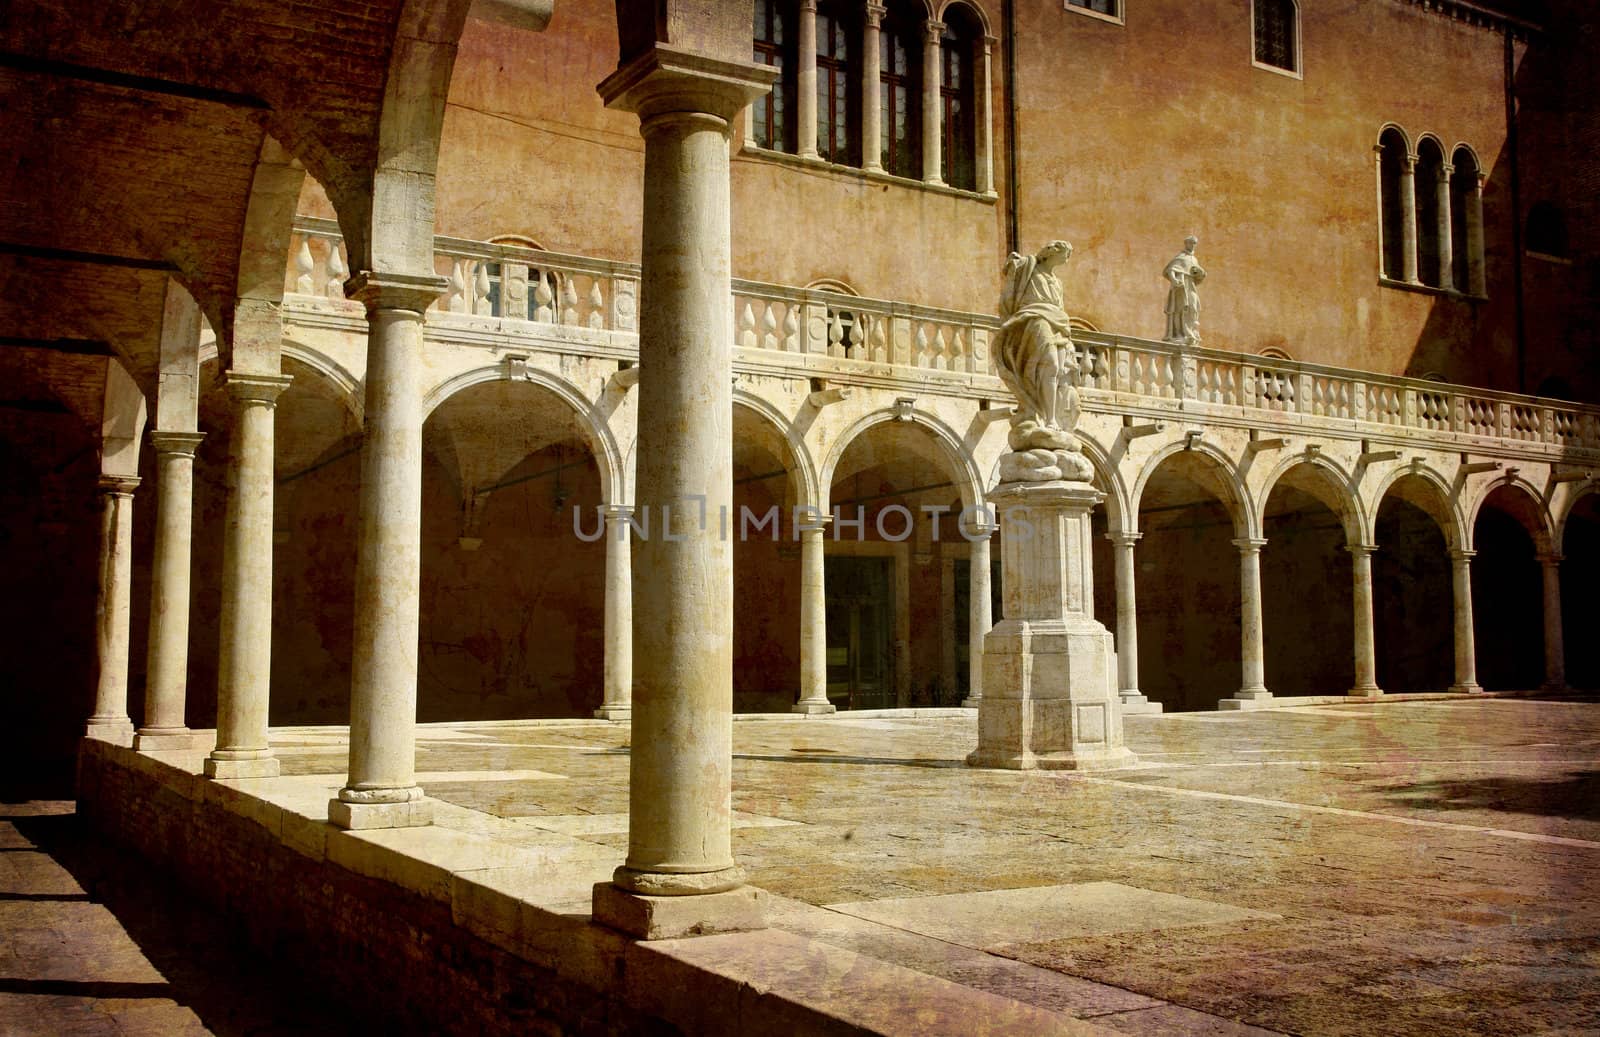 Artistic work of my own in retro style - Postcard from Italy.  Chiostro della Ss. Trinitai - Venezia